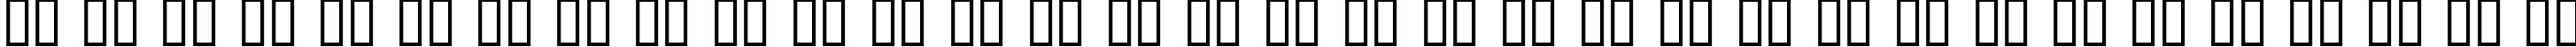 Пример написания русского алфавита шрифтом ChickenScratch AOE